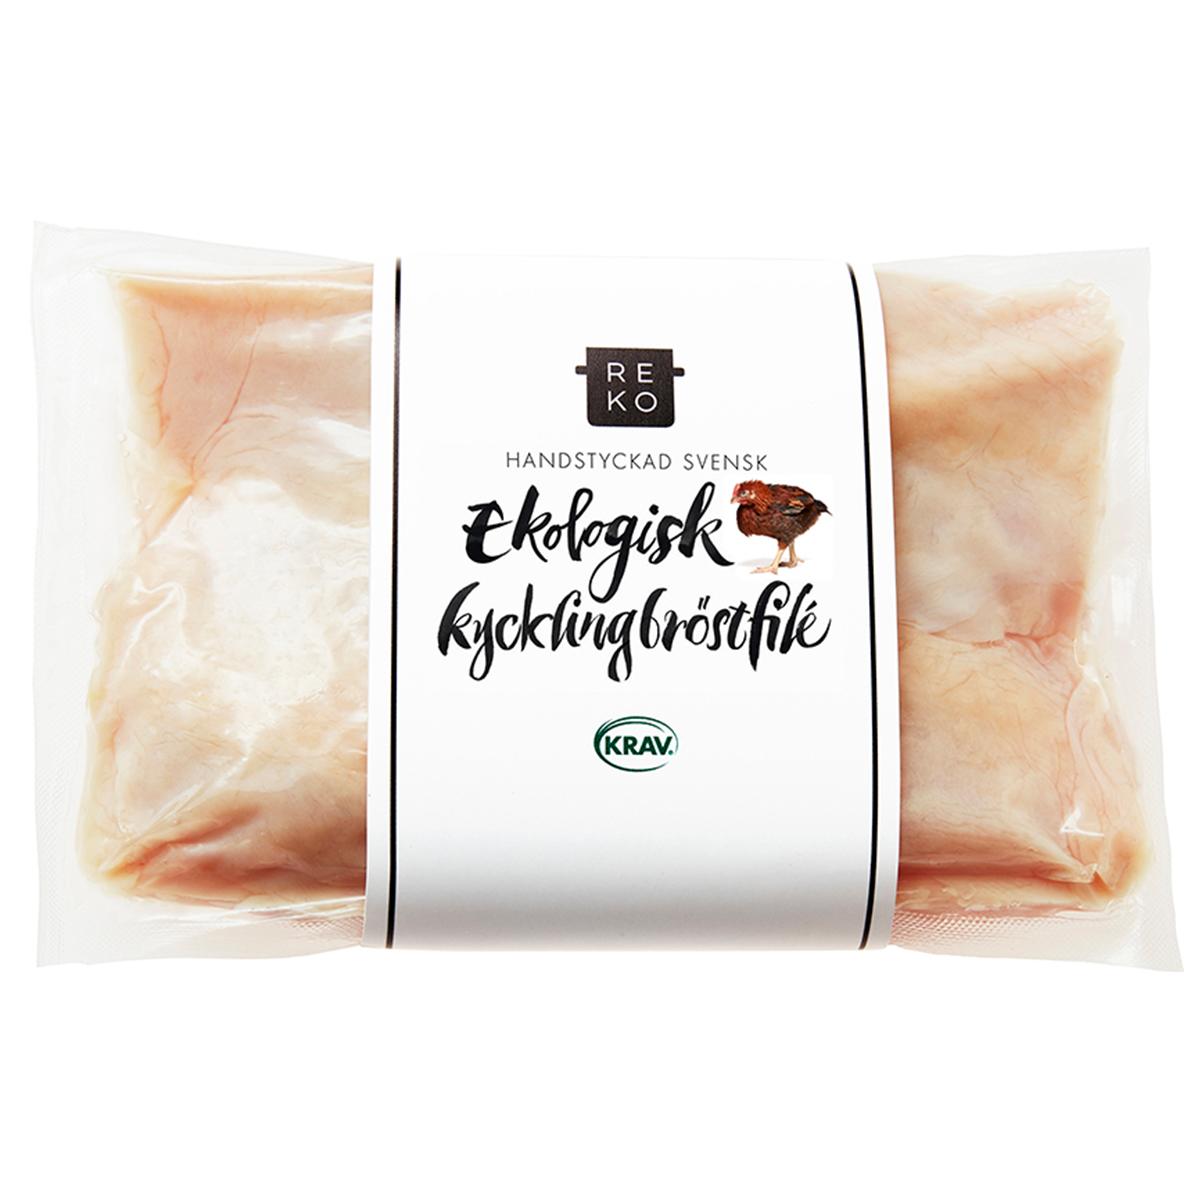 Reko Gårdar'' Chicken breast fillet '